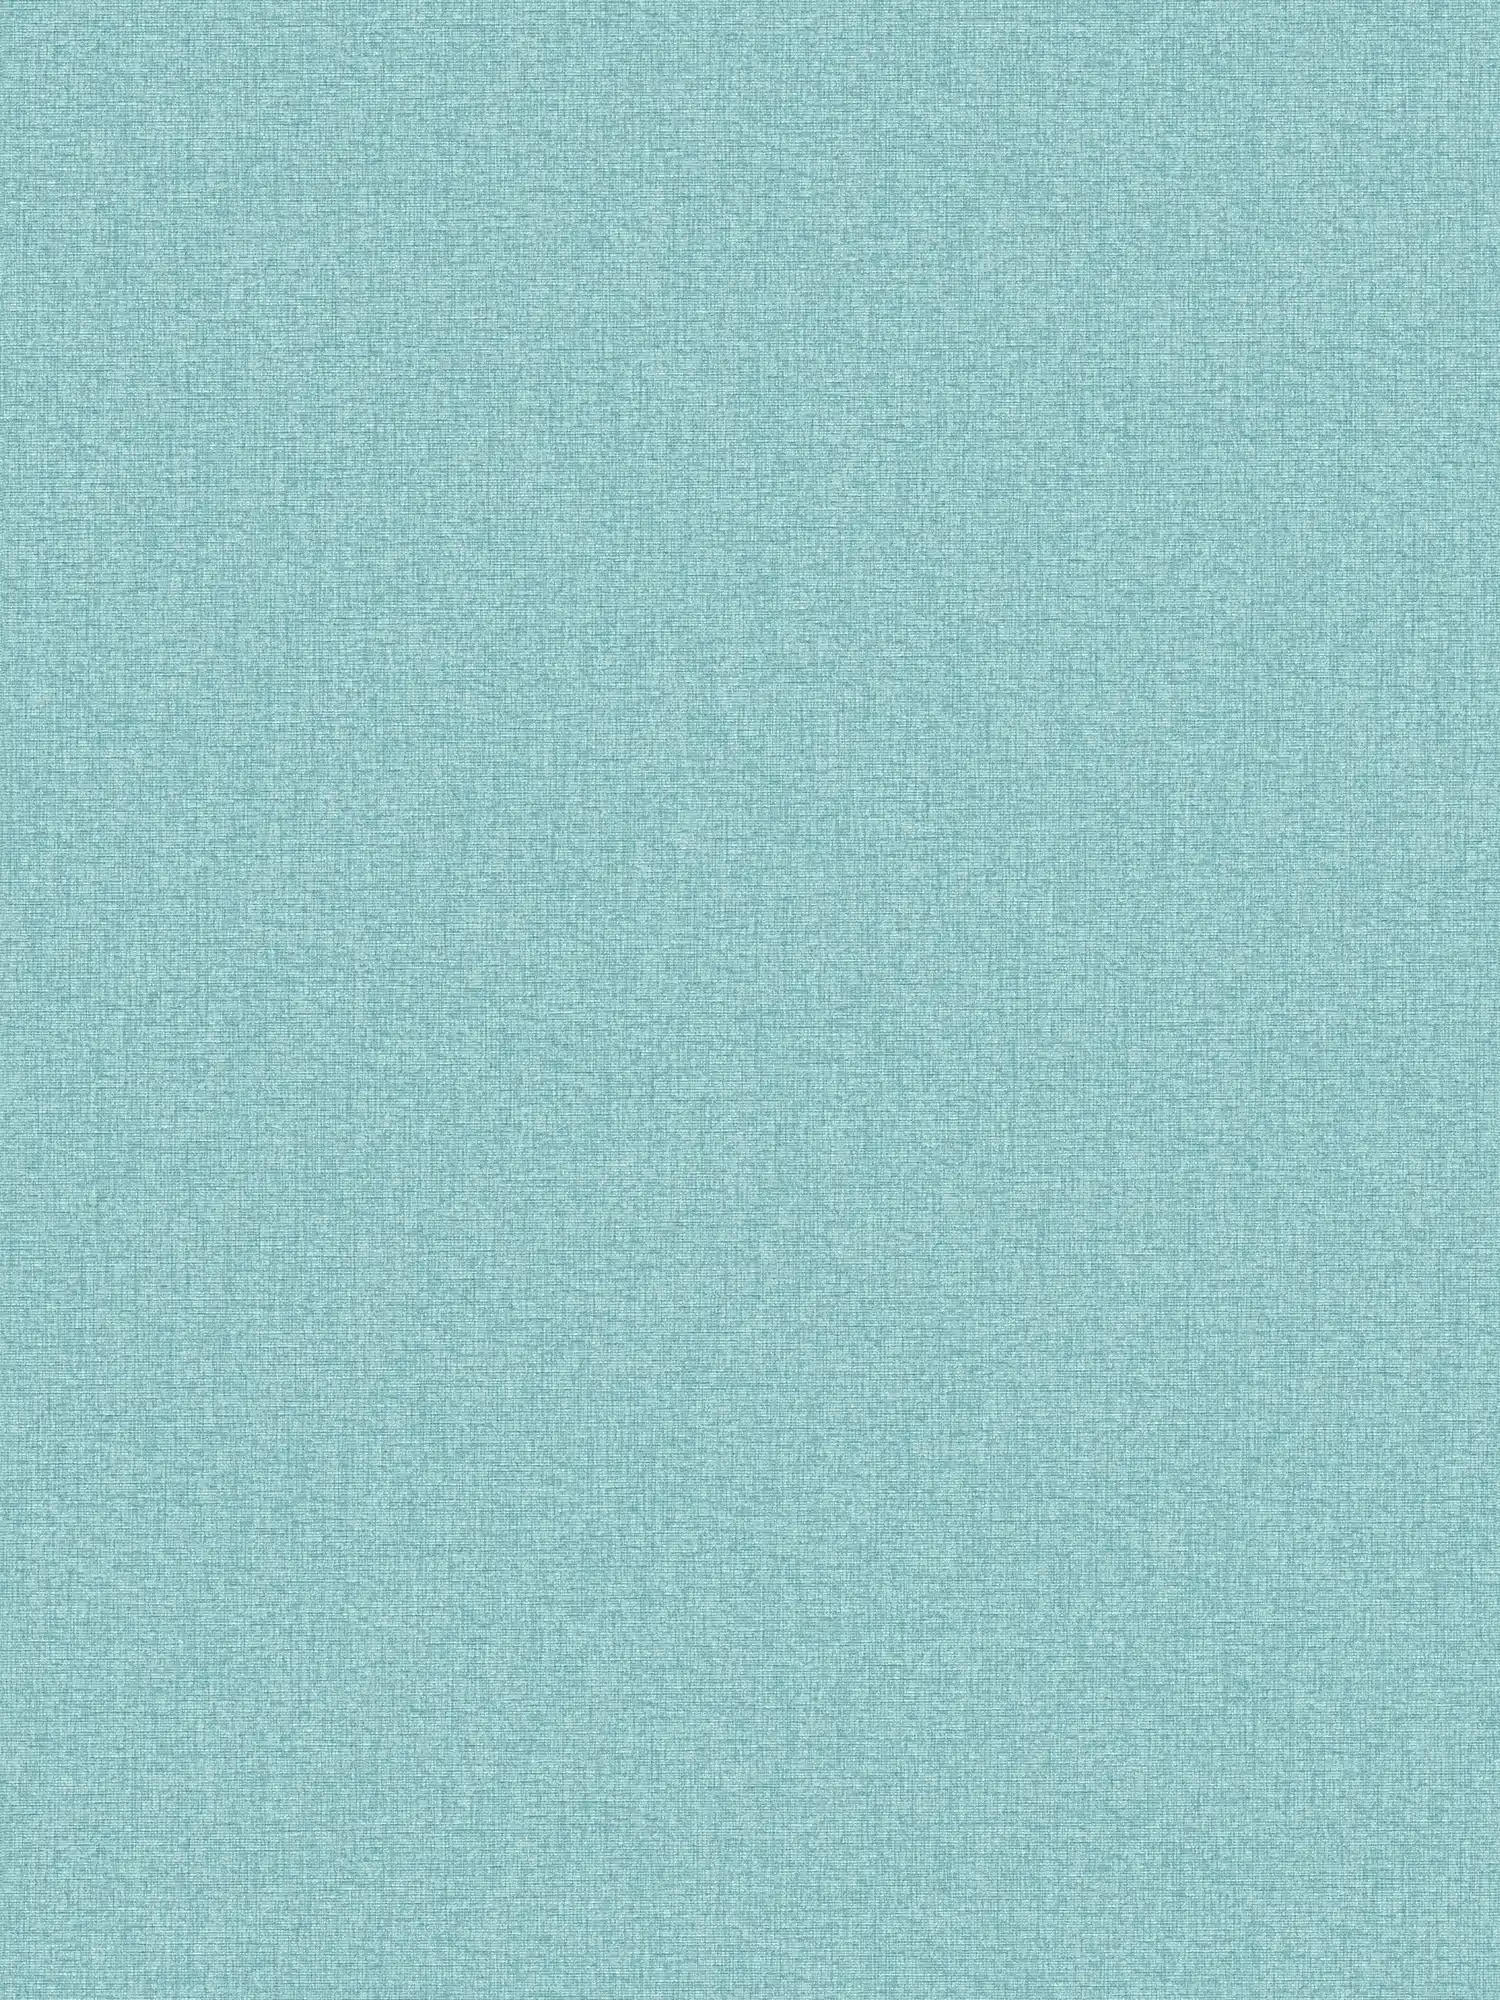 Einfarbige Vliestapete in Gewebe-Optik mit leichter Struktur, matt – Türkis, Blau, Hellblau
